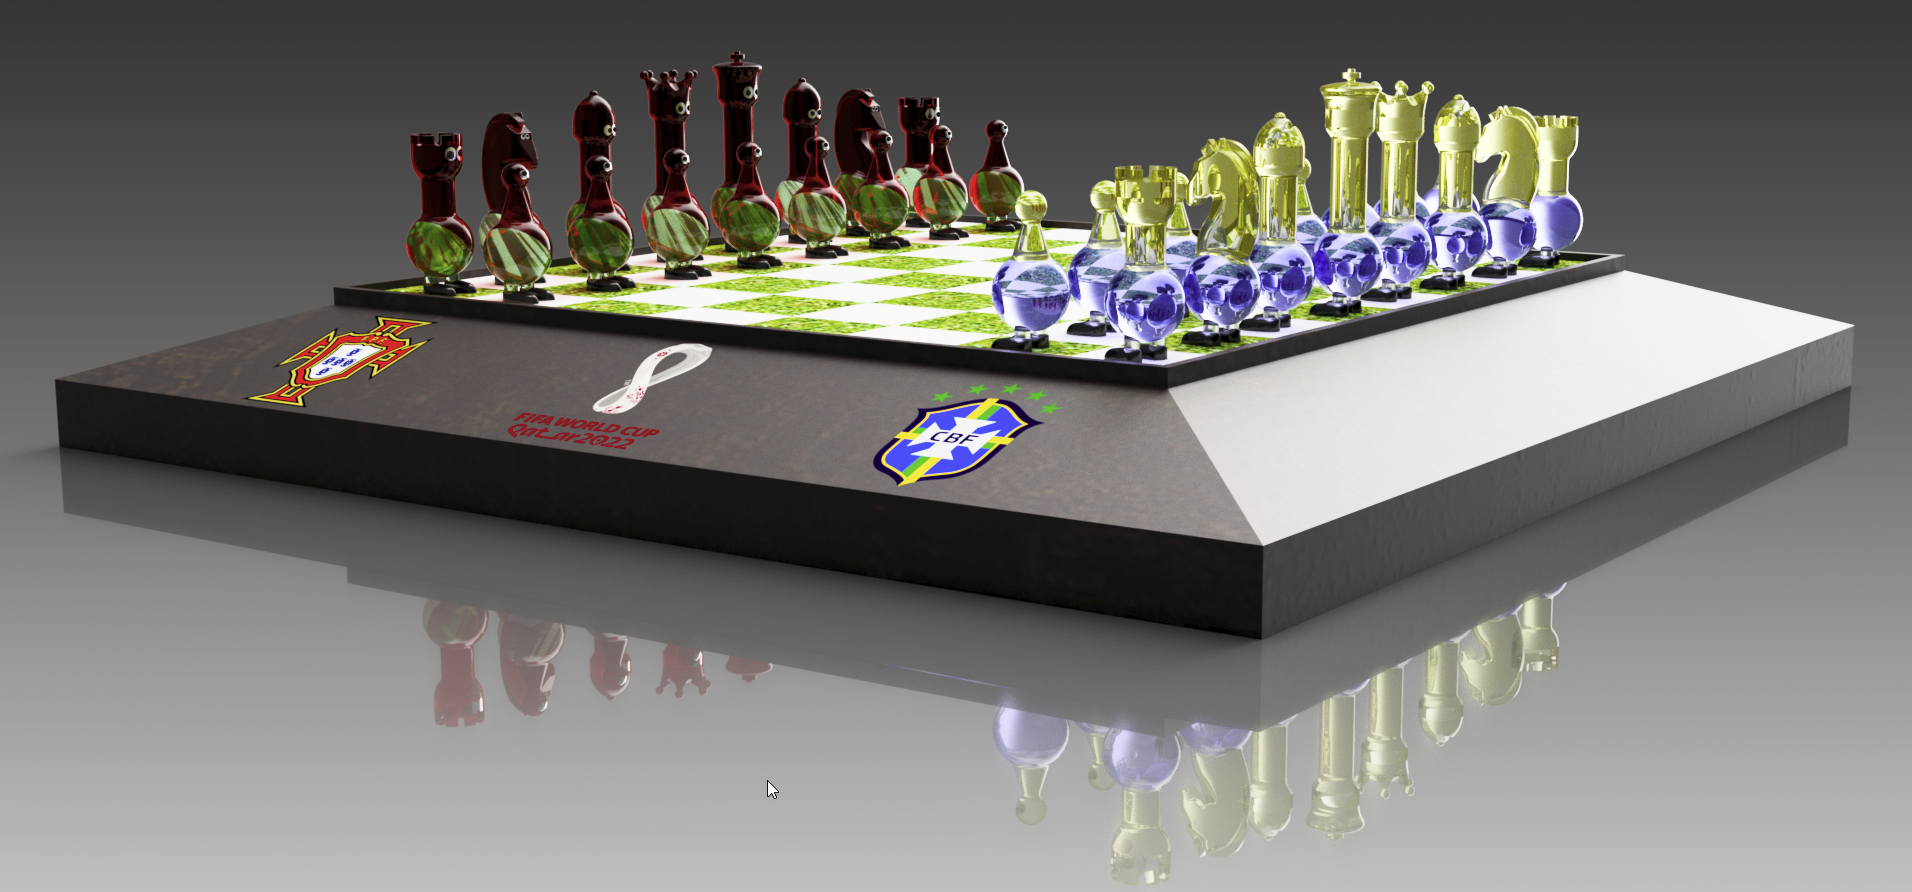 Evolução do xadrez: Inventor cria três novas peças e amplia